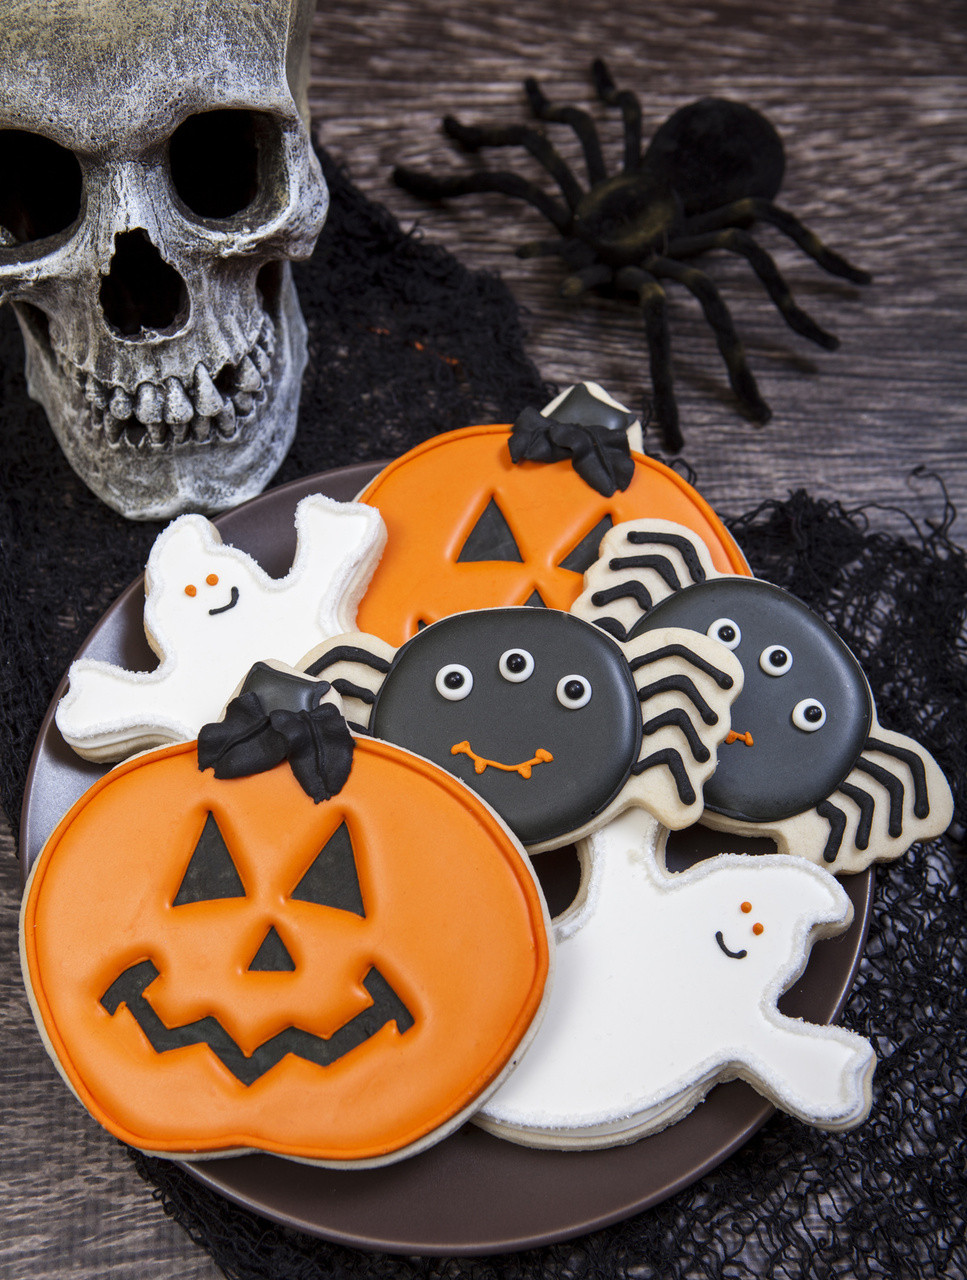 Halloween Decorating Cookies
 Spooky Cookie Halloween Cookie Decorations